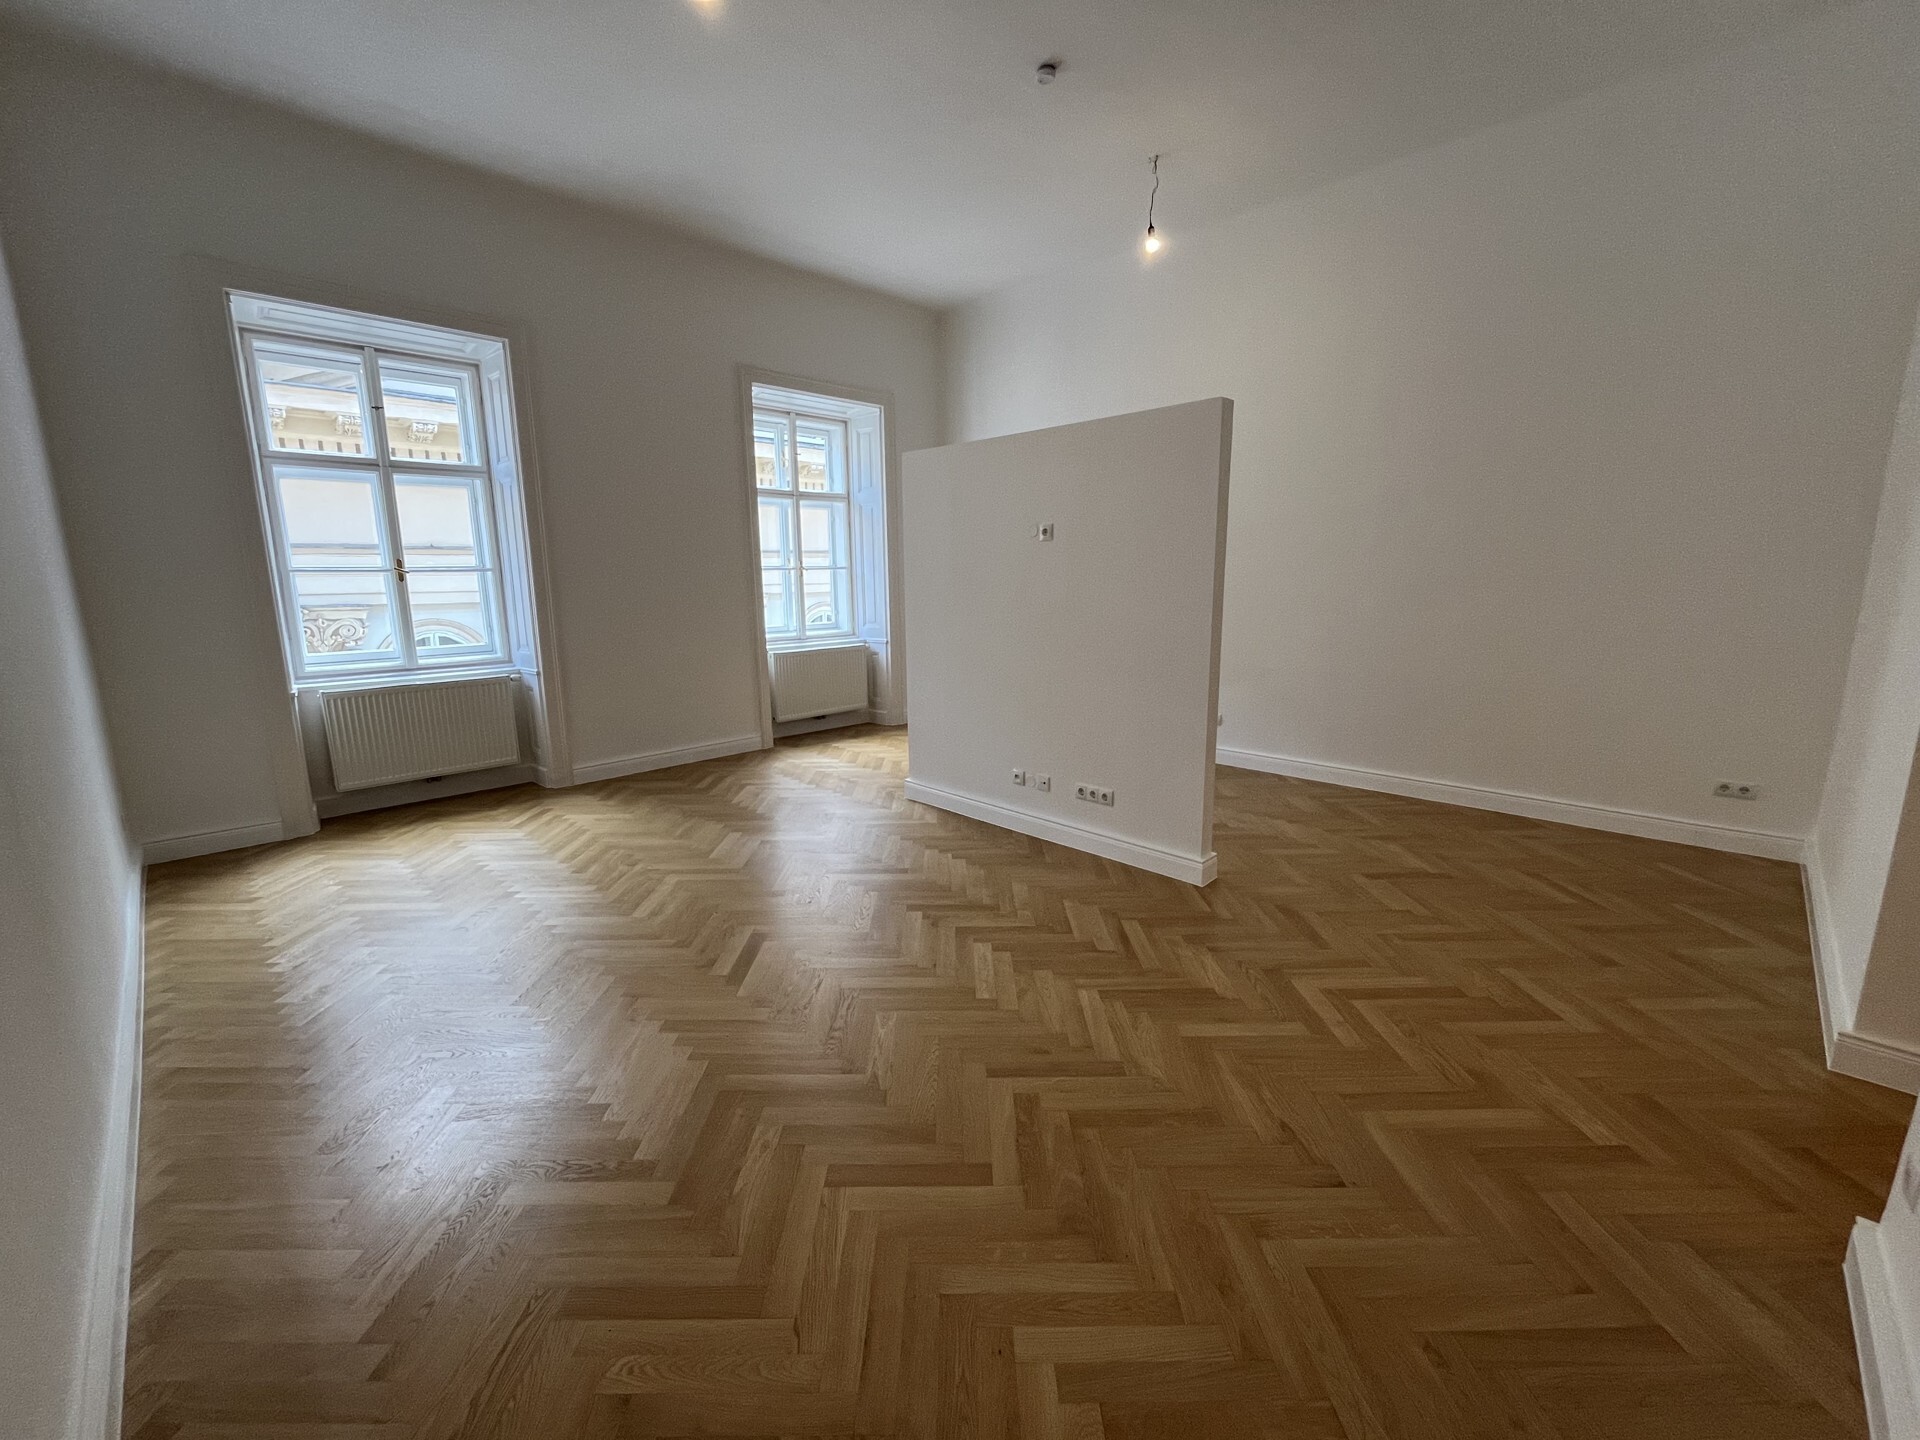 Moderne 1-Zimmer-Wohnung in schönem Altbau - unbefristet zu mieten in 1010 Wien